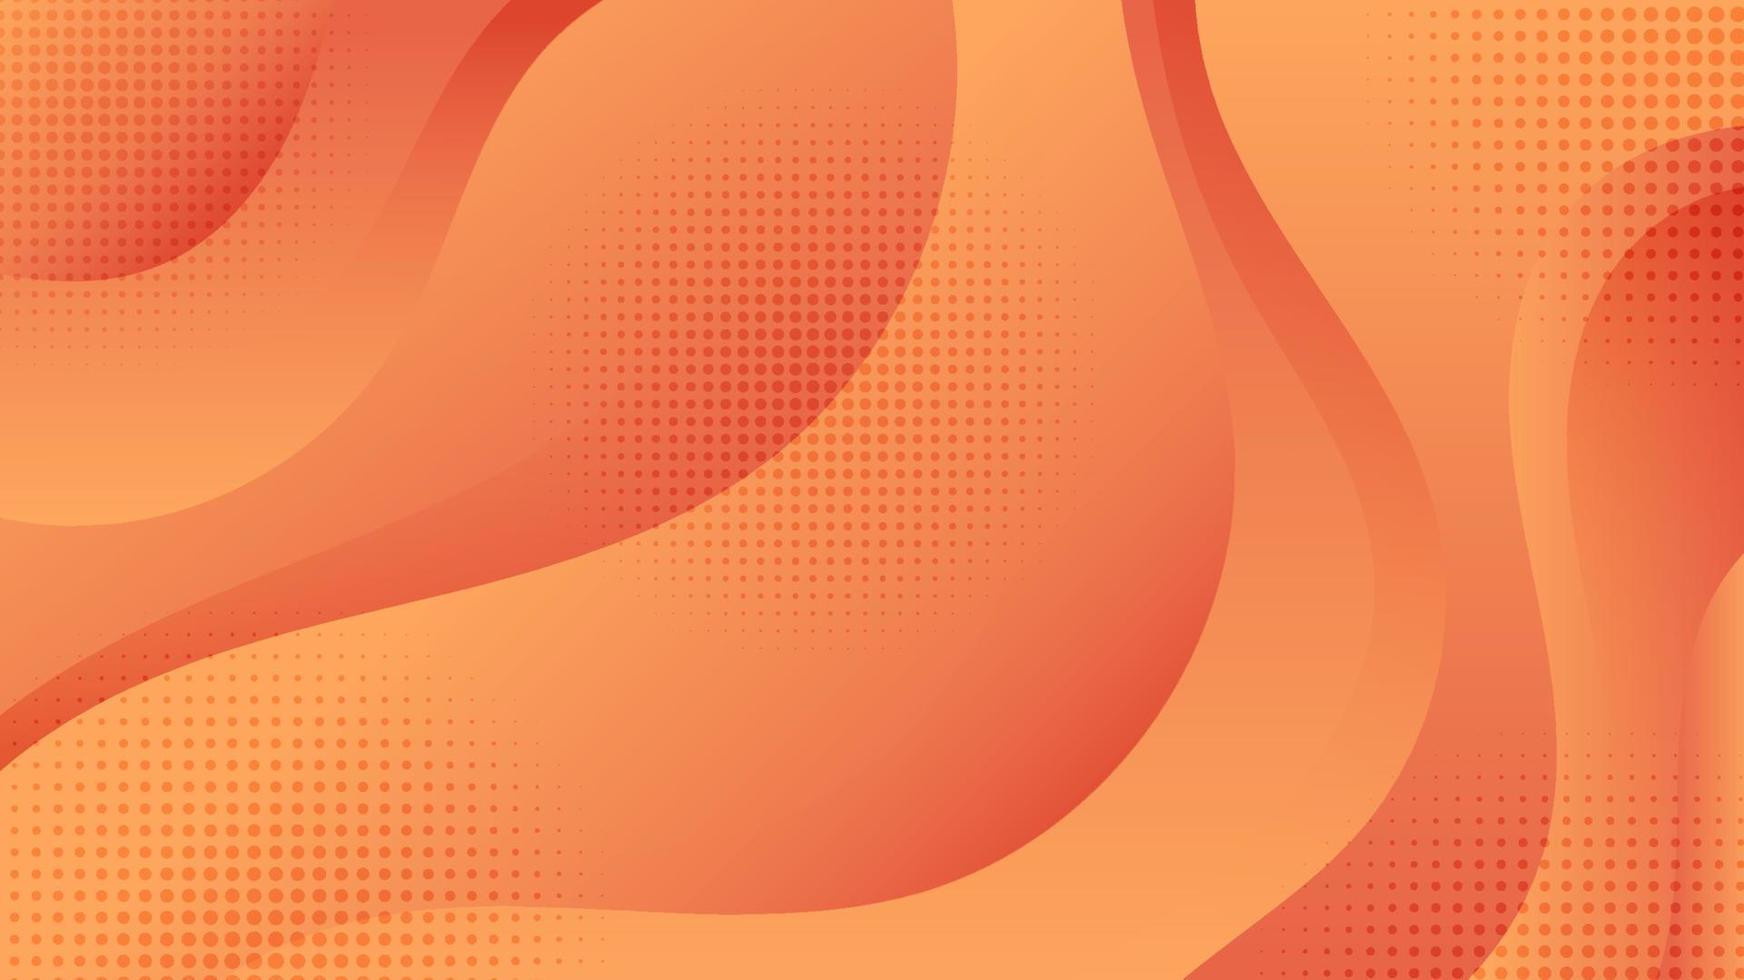 abstracte oranje golfvorm overlappende laag met halftooneffect achtergrondpapier kunststijl vector